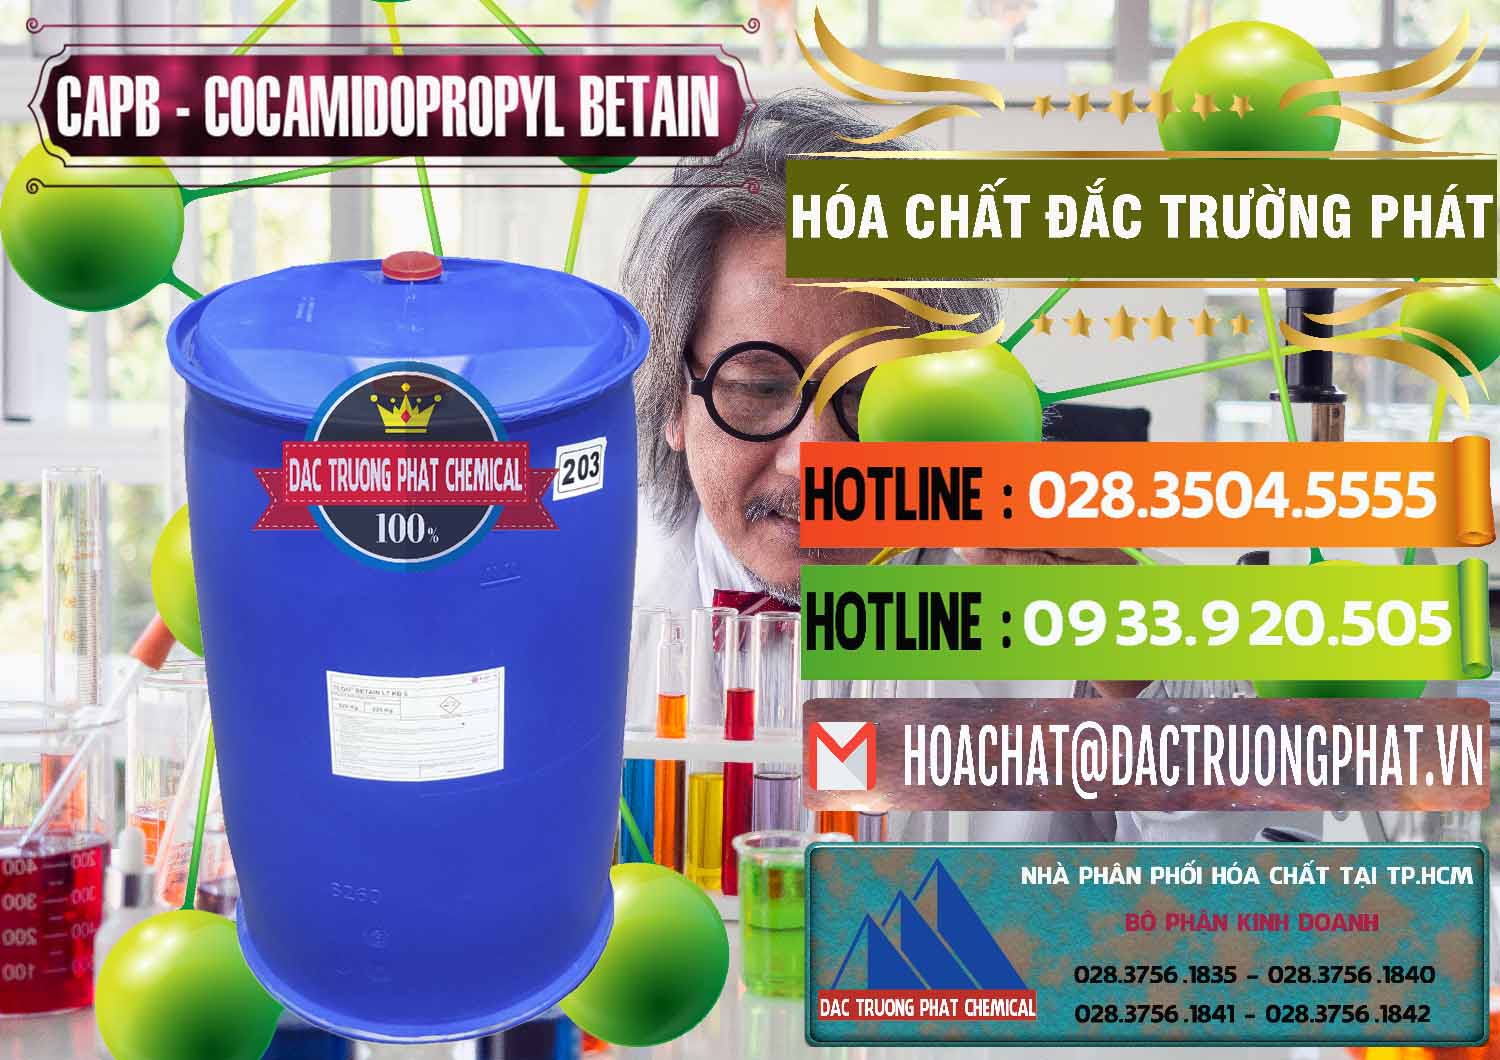 Bán ( cung ứng ) Cocamidopropyl Betaine - CAPB Tego Indonesia - 0327 - Chuyên phân phối ( cung ứng ) hóa chất tại TP.HCM - cungcaphoachat.com.vn